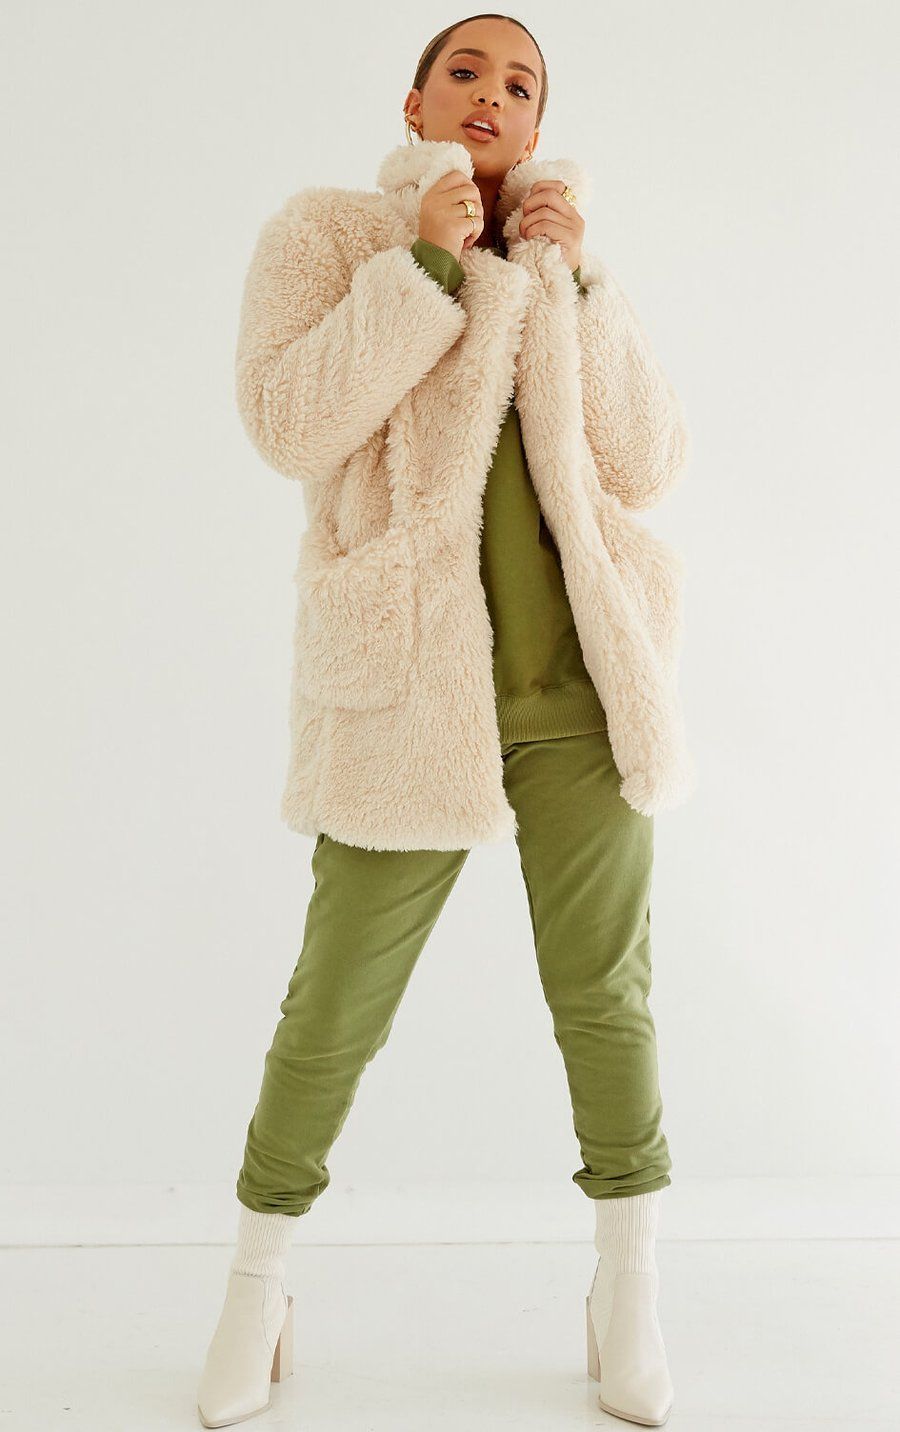 ZWWZ Women Faux Fur Casual Open Front Jackets Long Sleeve Warm Winter Lapel Coat Outerwear 